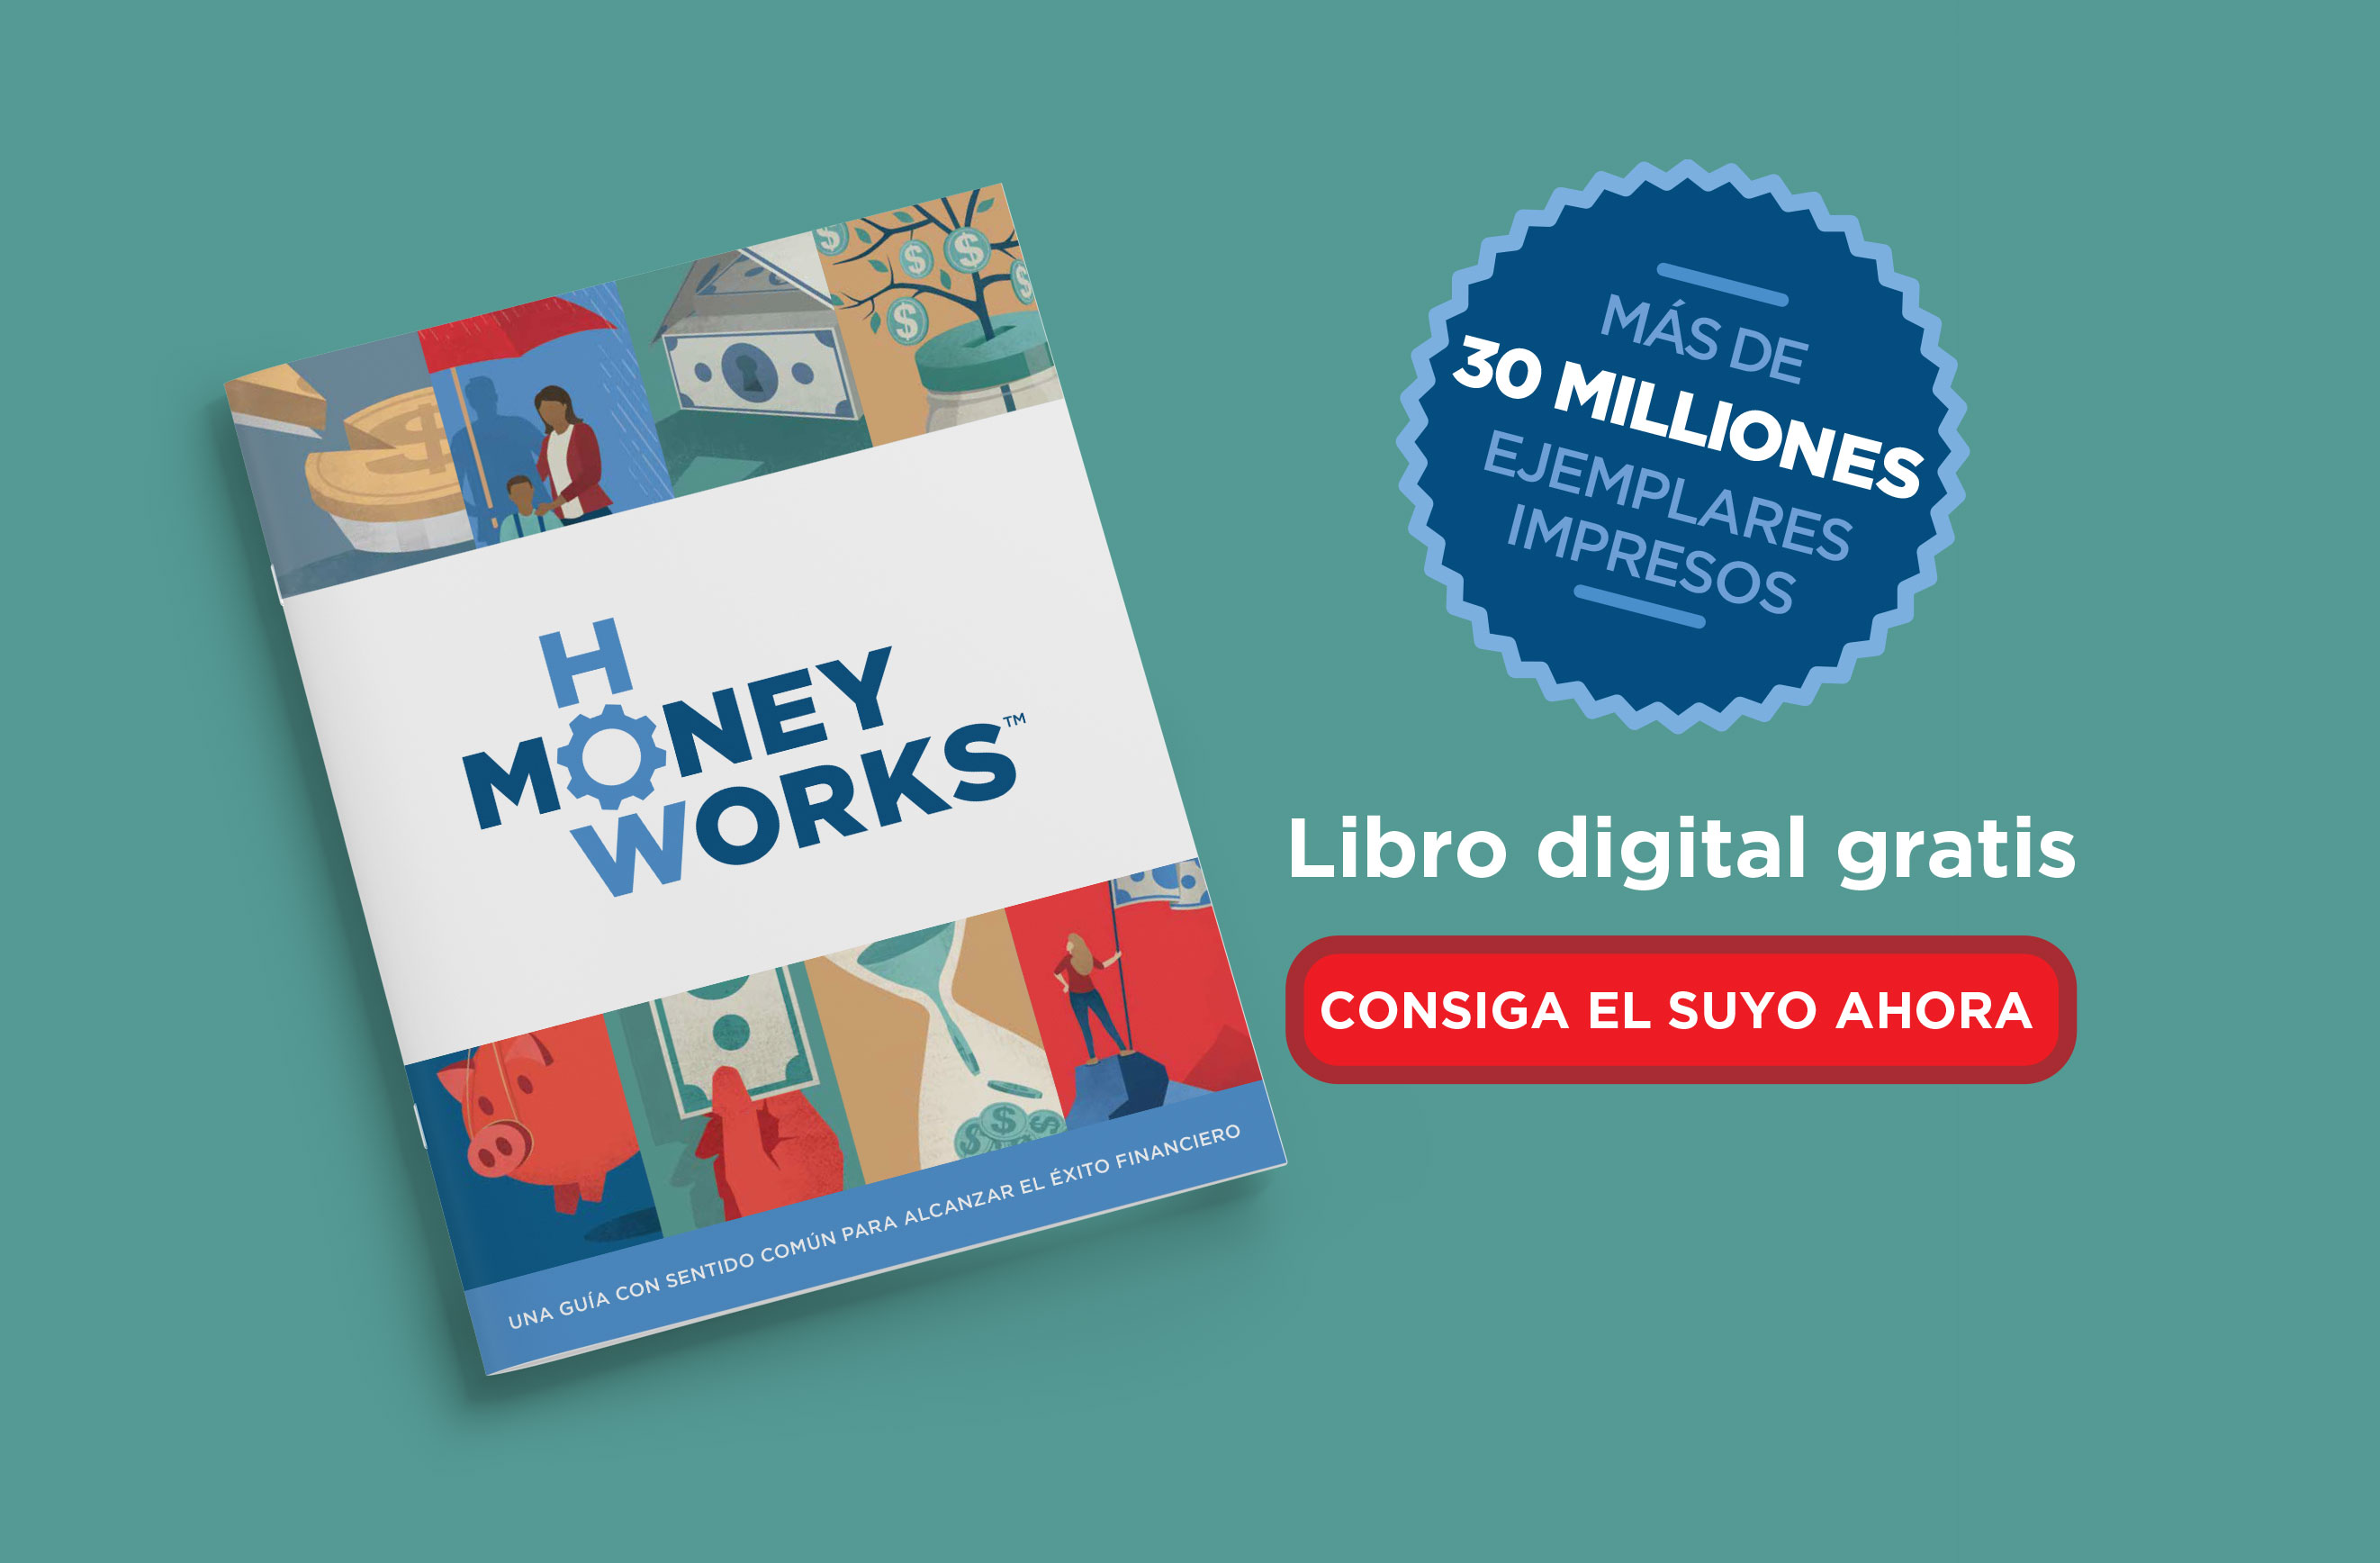 Más de 30 millones en impresión - Libro digital gratis - Consiga el suyo ahora